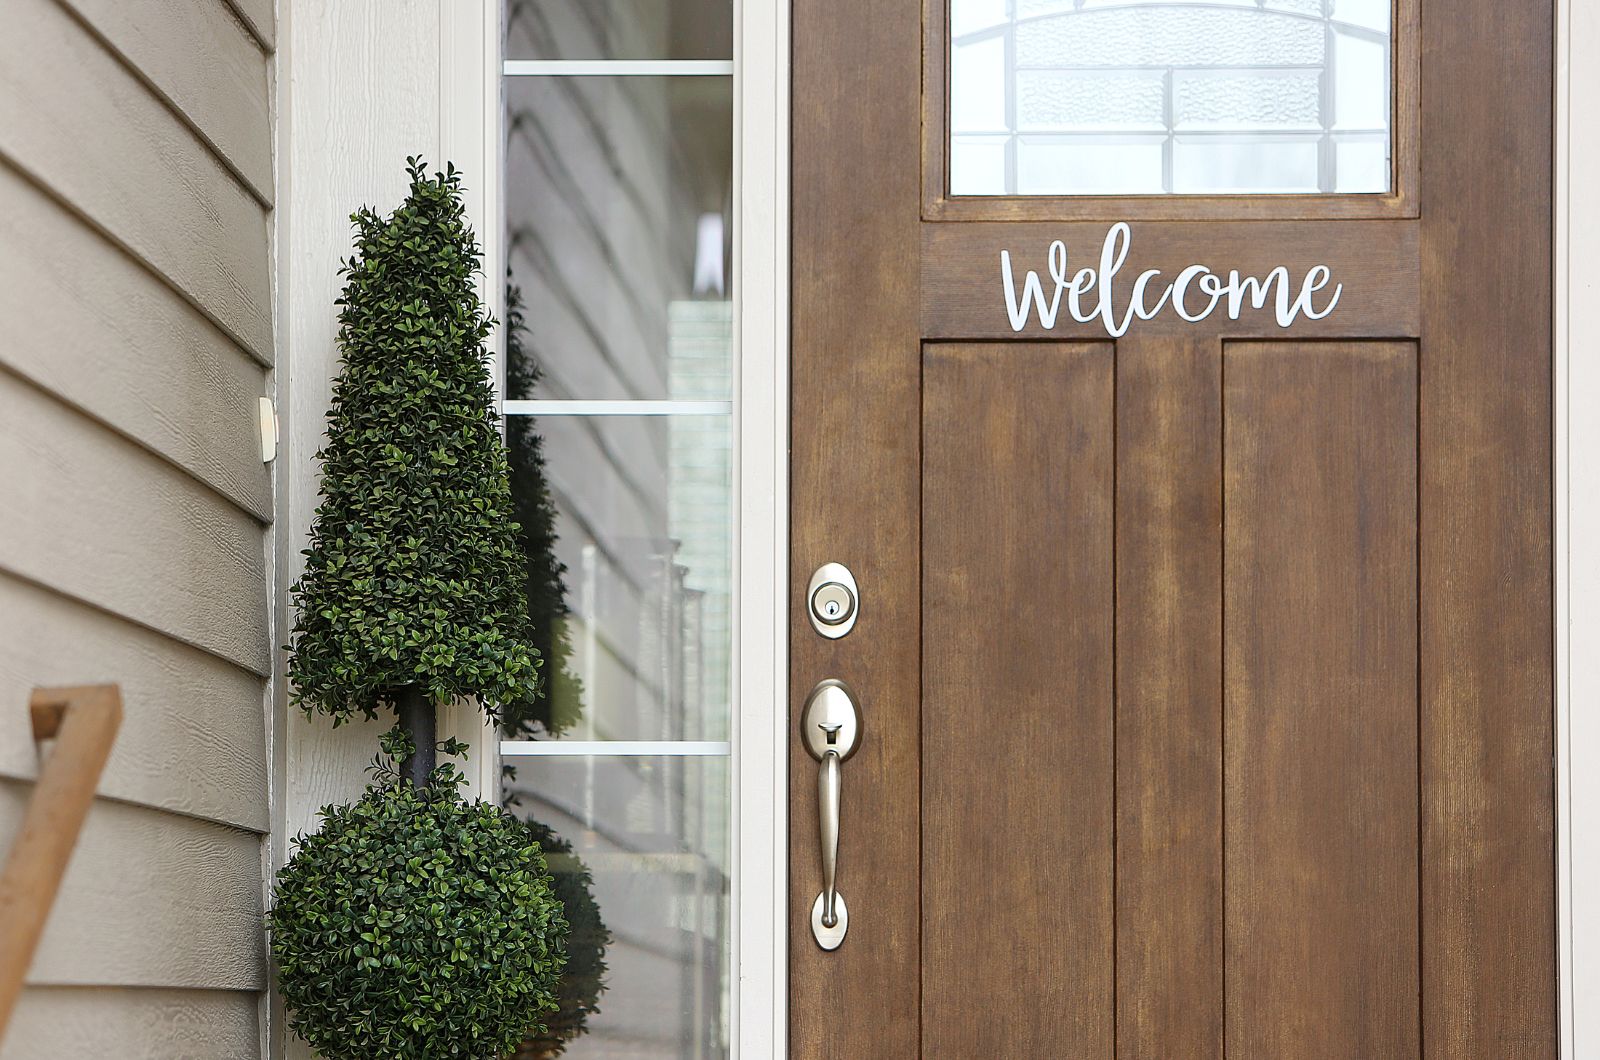 כיצד לבחור את השלט הנכון לדלת הכניסה לביתכם?